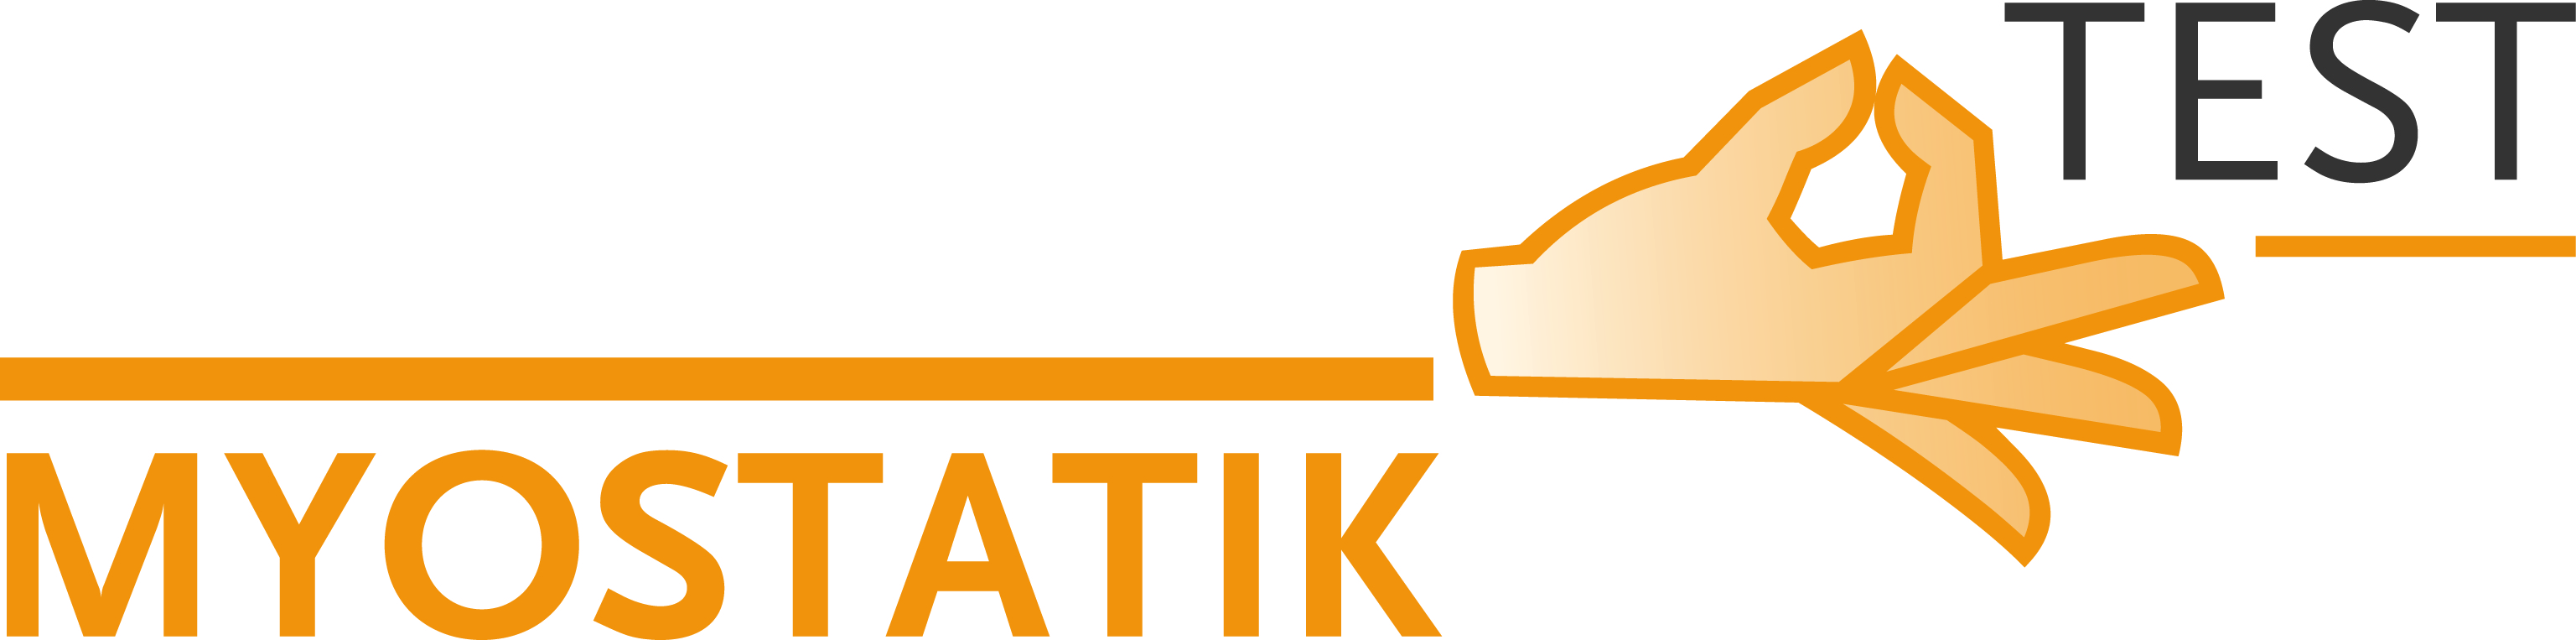 myostatiktest logo